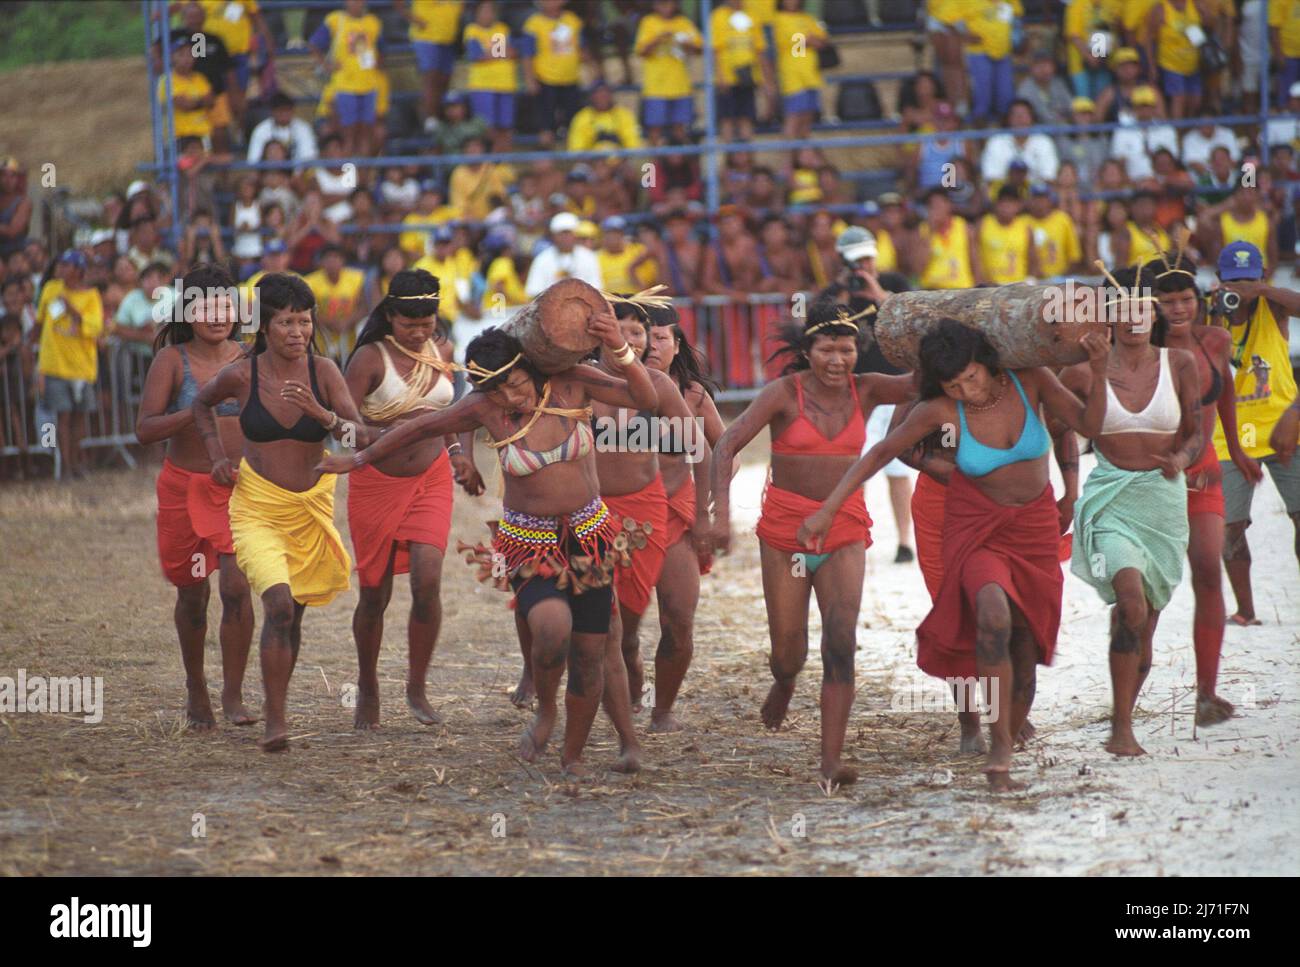 Indigenous Games. Jogos Indígenas, Amazon, Brazil, 2005. Stock Photo